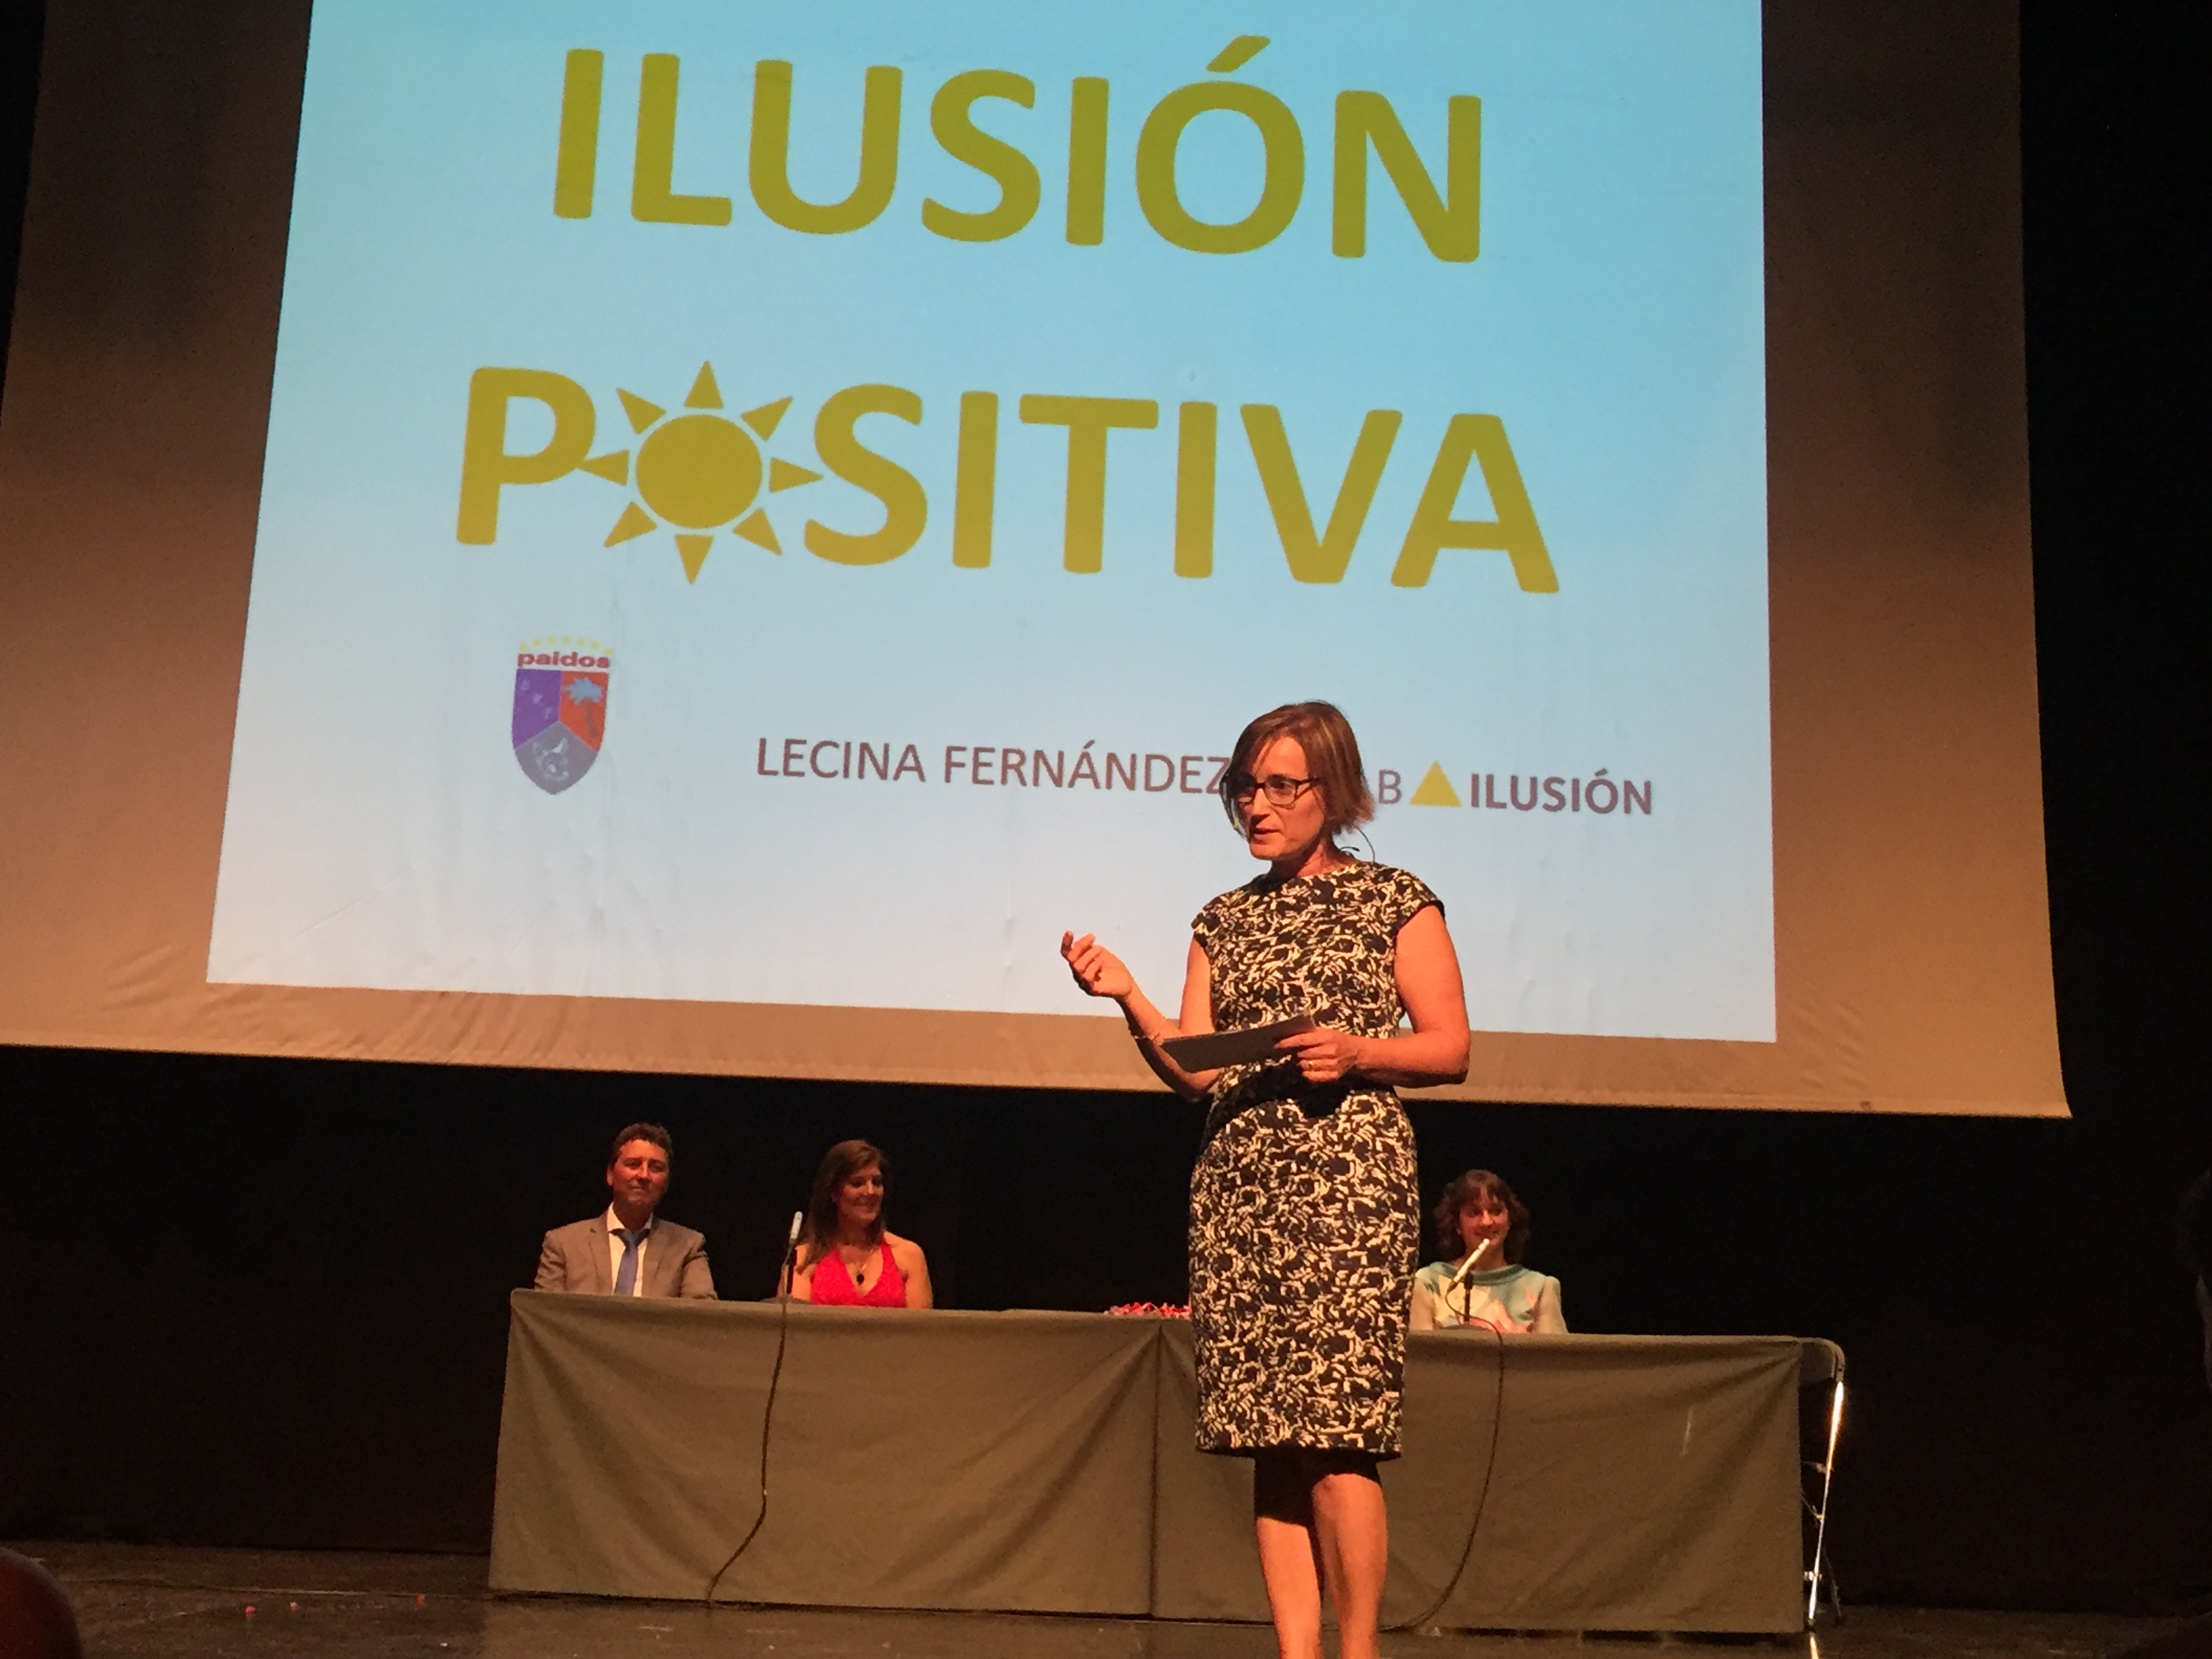 Charla Lecina Fernández sobre ilusión positiva organizada por Paidos Denia